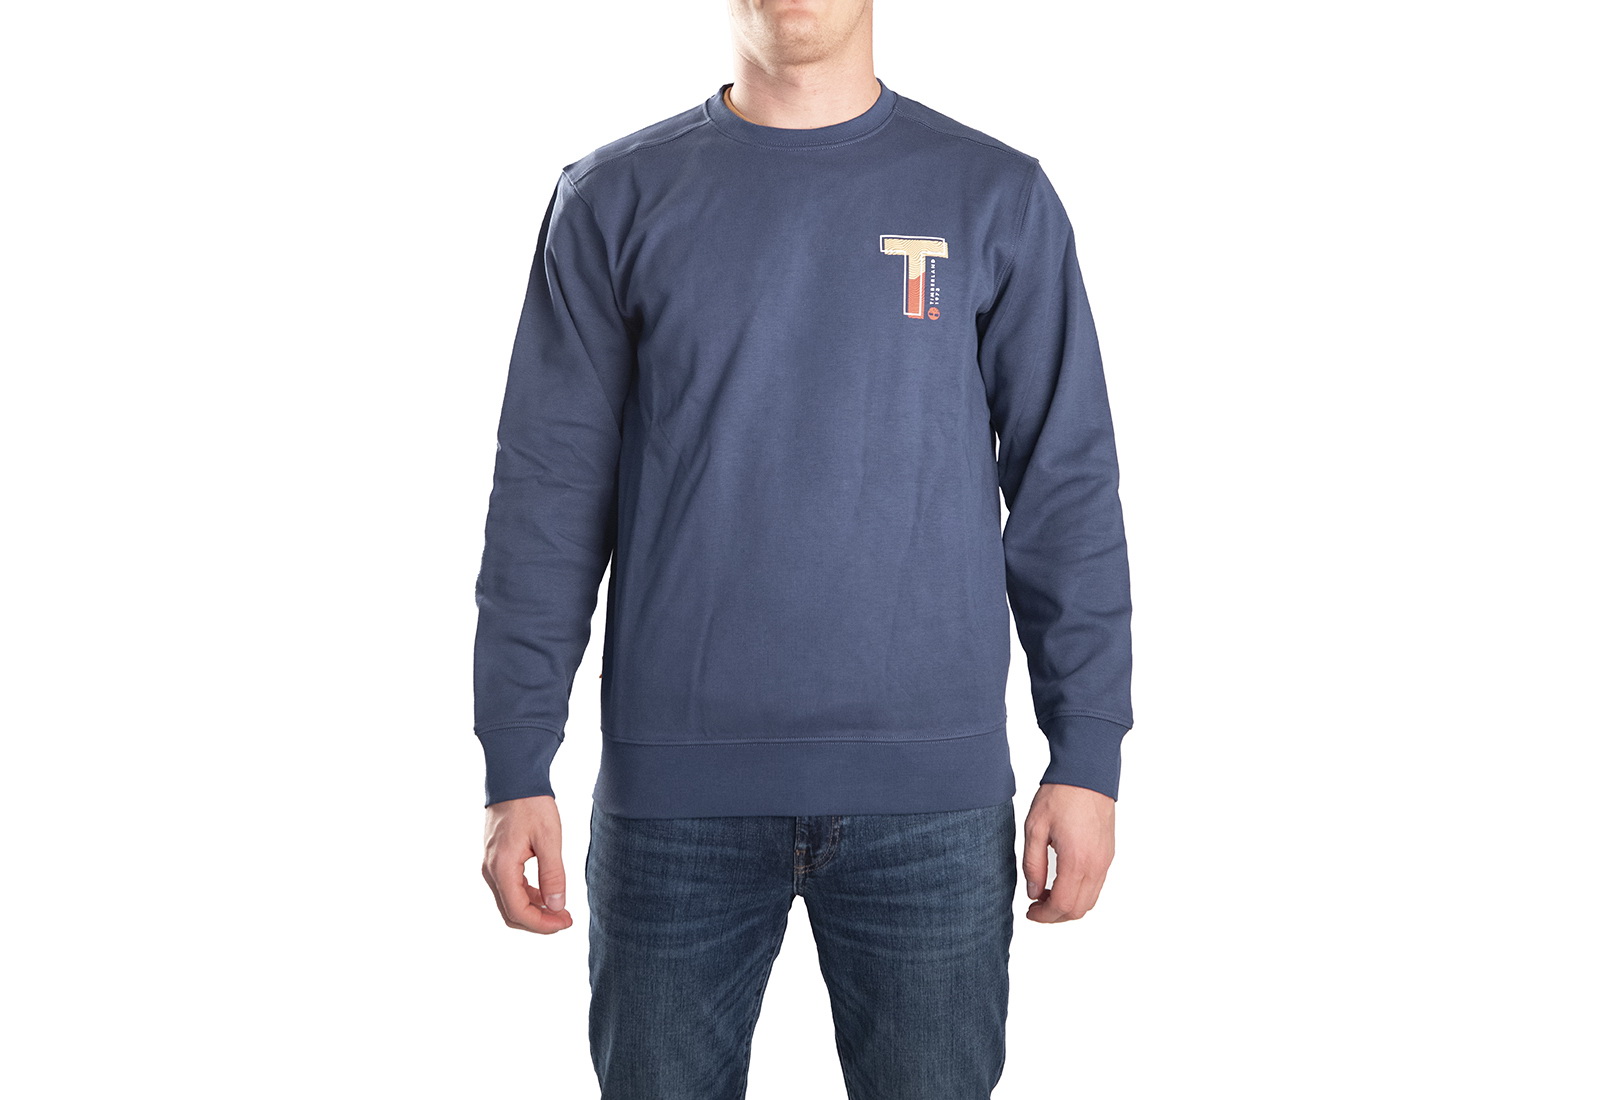 Timberland Haine Elevated Sweatshirt